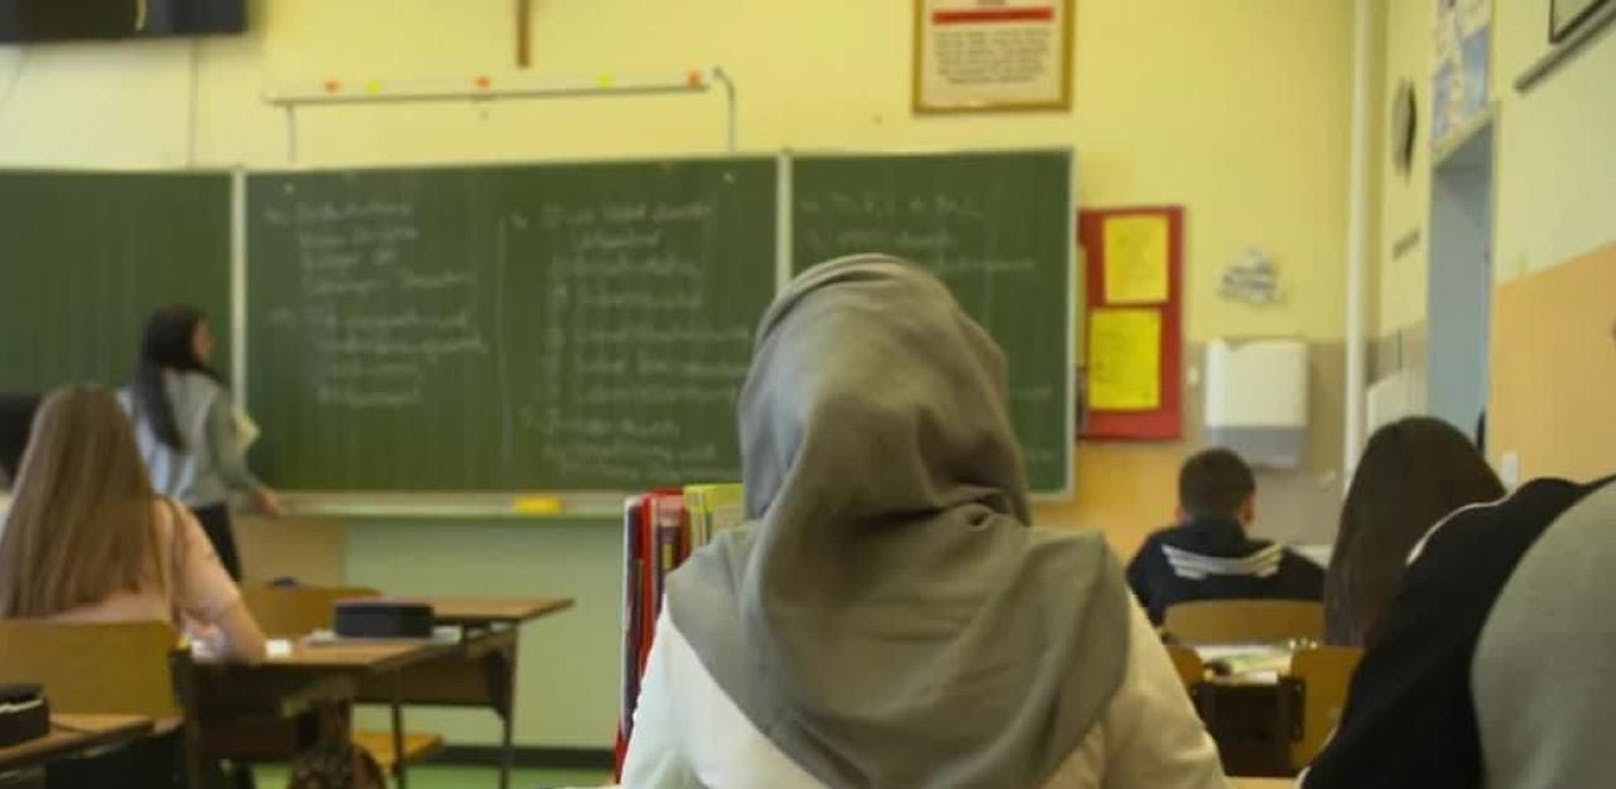 In der Steiermark fordert jetzt auch die SPÖ ein Kopftuchverbot für unter 14-jährige Schülerinnen.